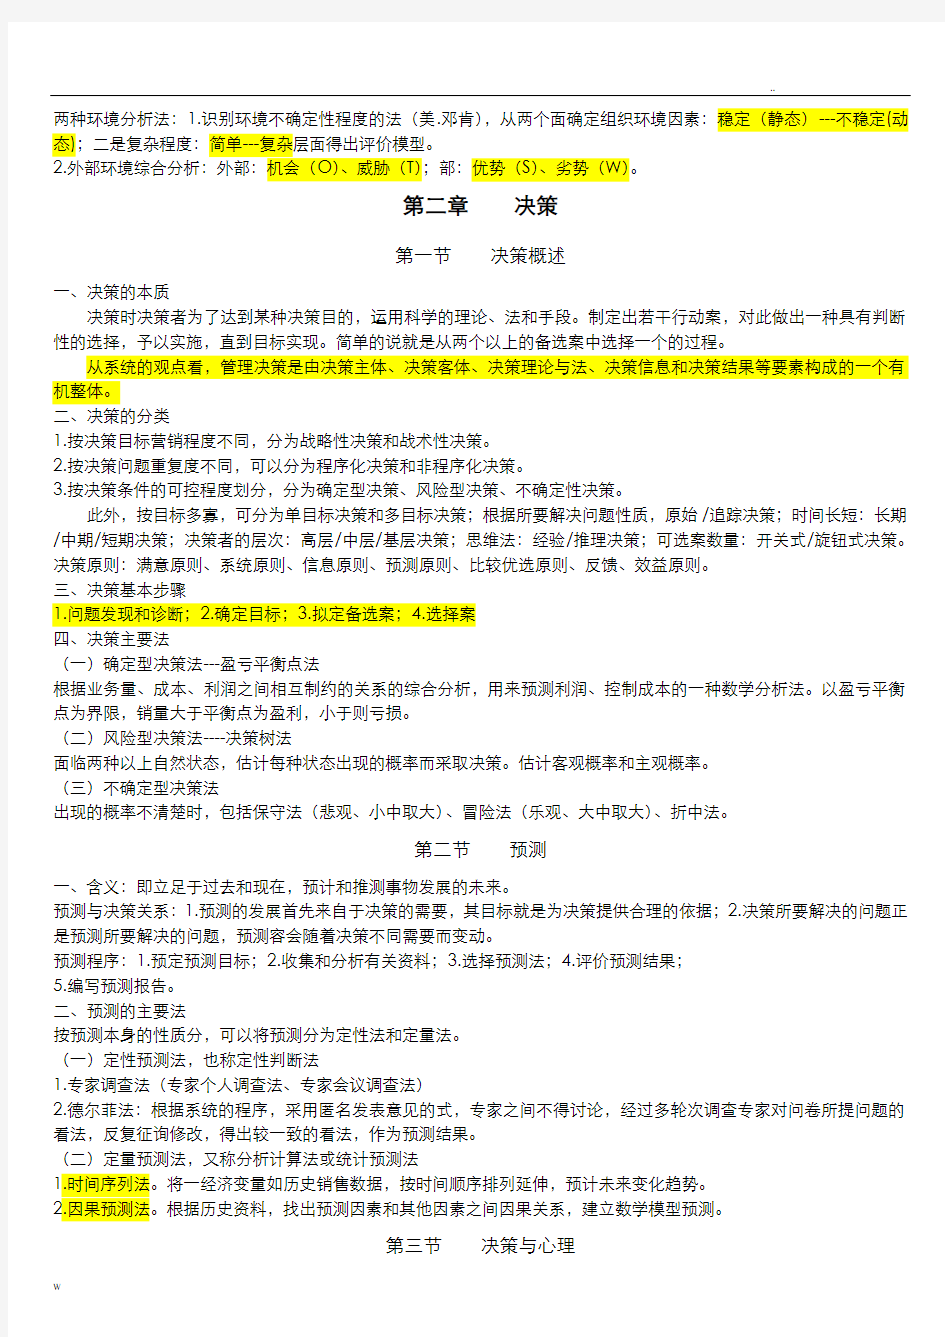 重庆市事业单位管理基础知识(全)